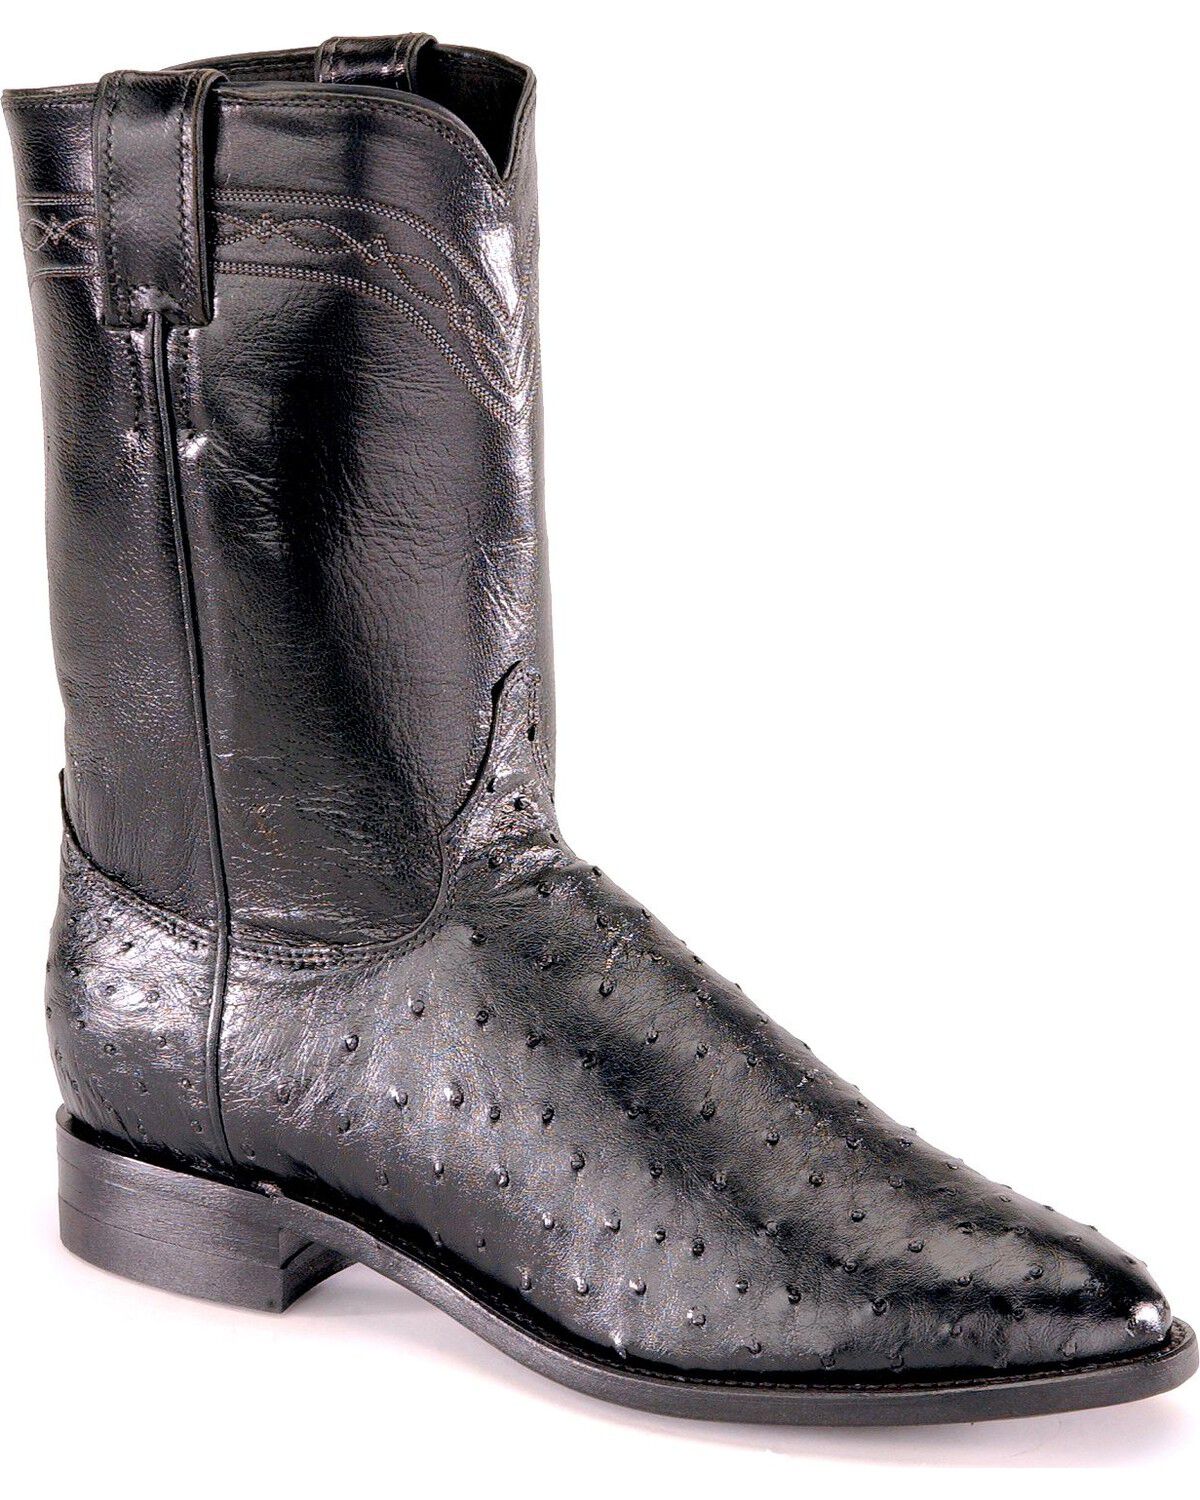 grey roper boots